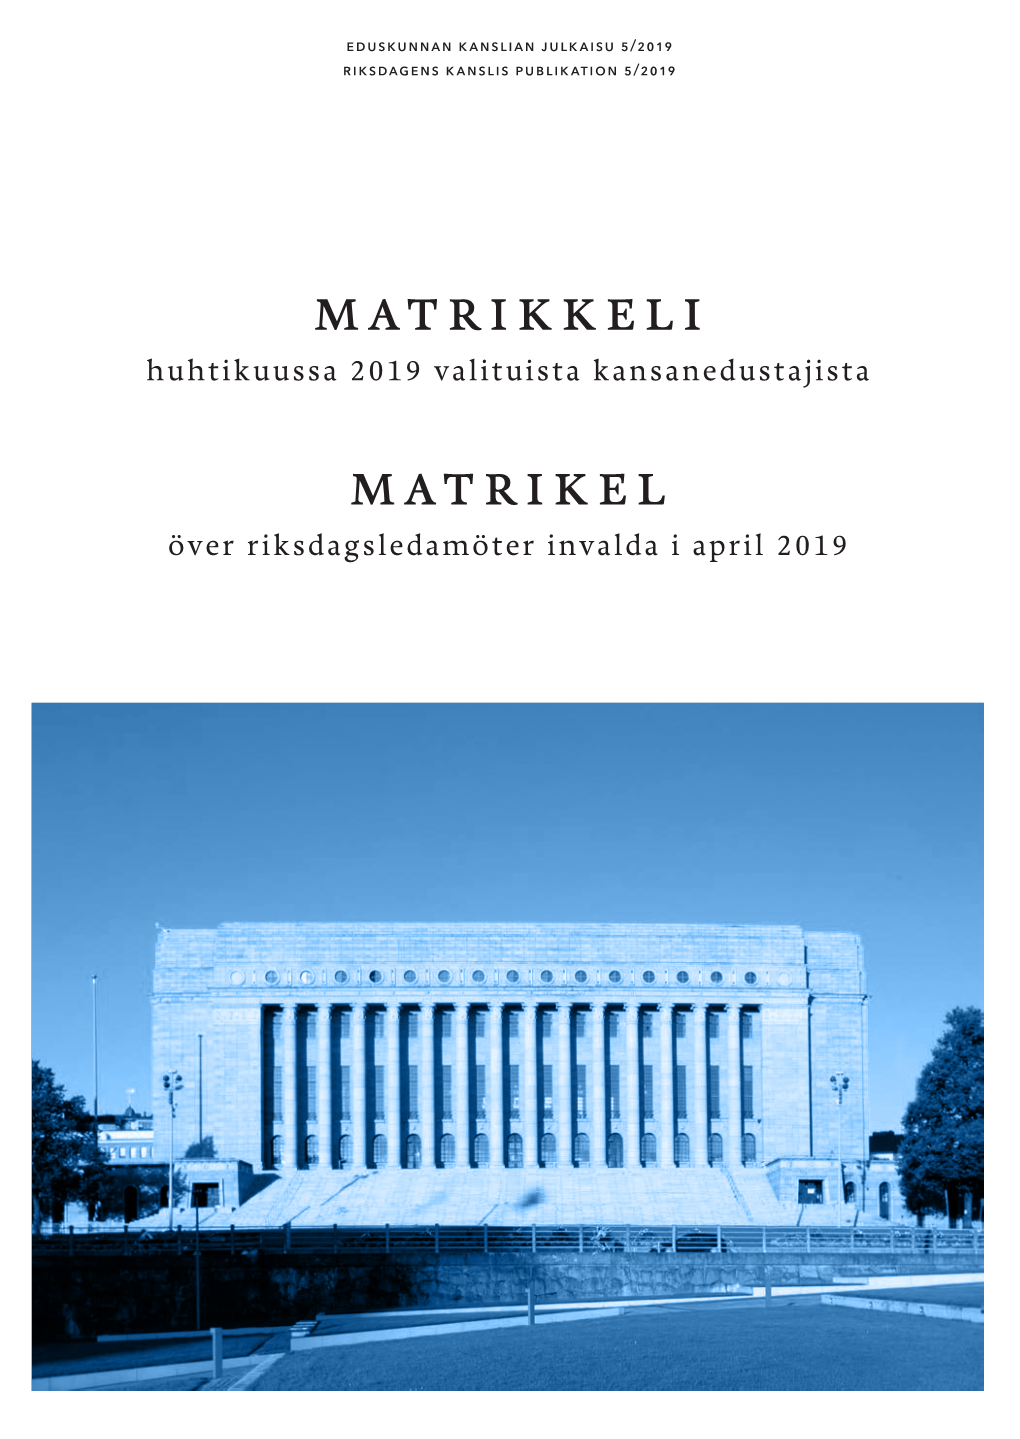 Matrikkeli Matrikel Riksdagens Kanslis Publikation 5/2019